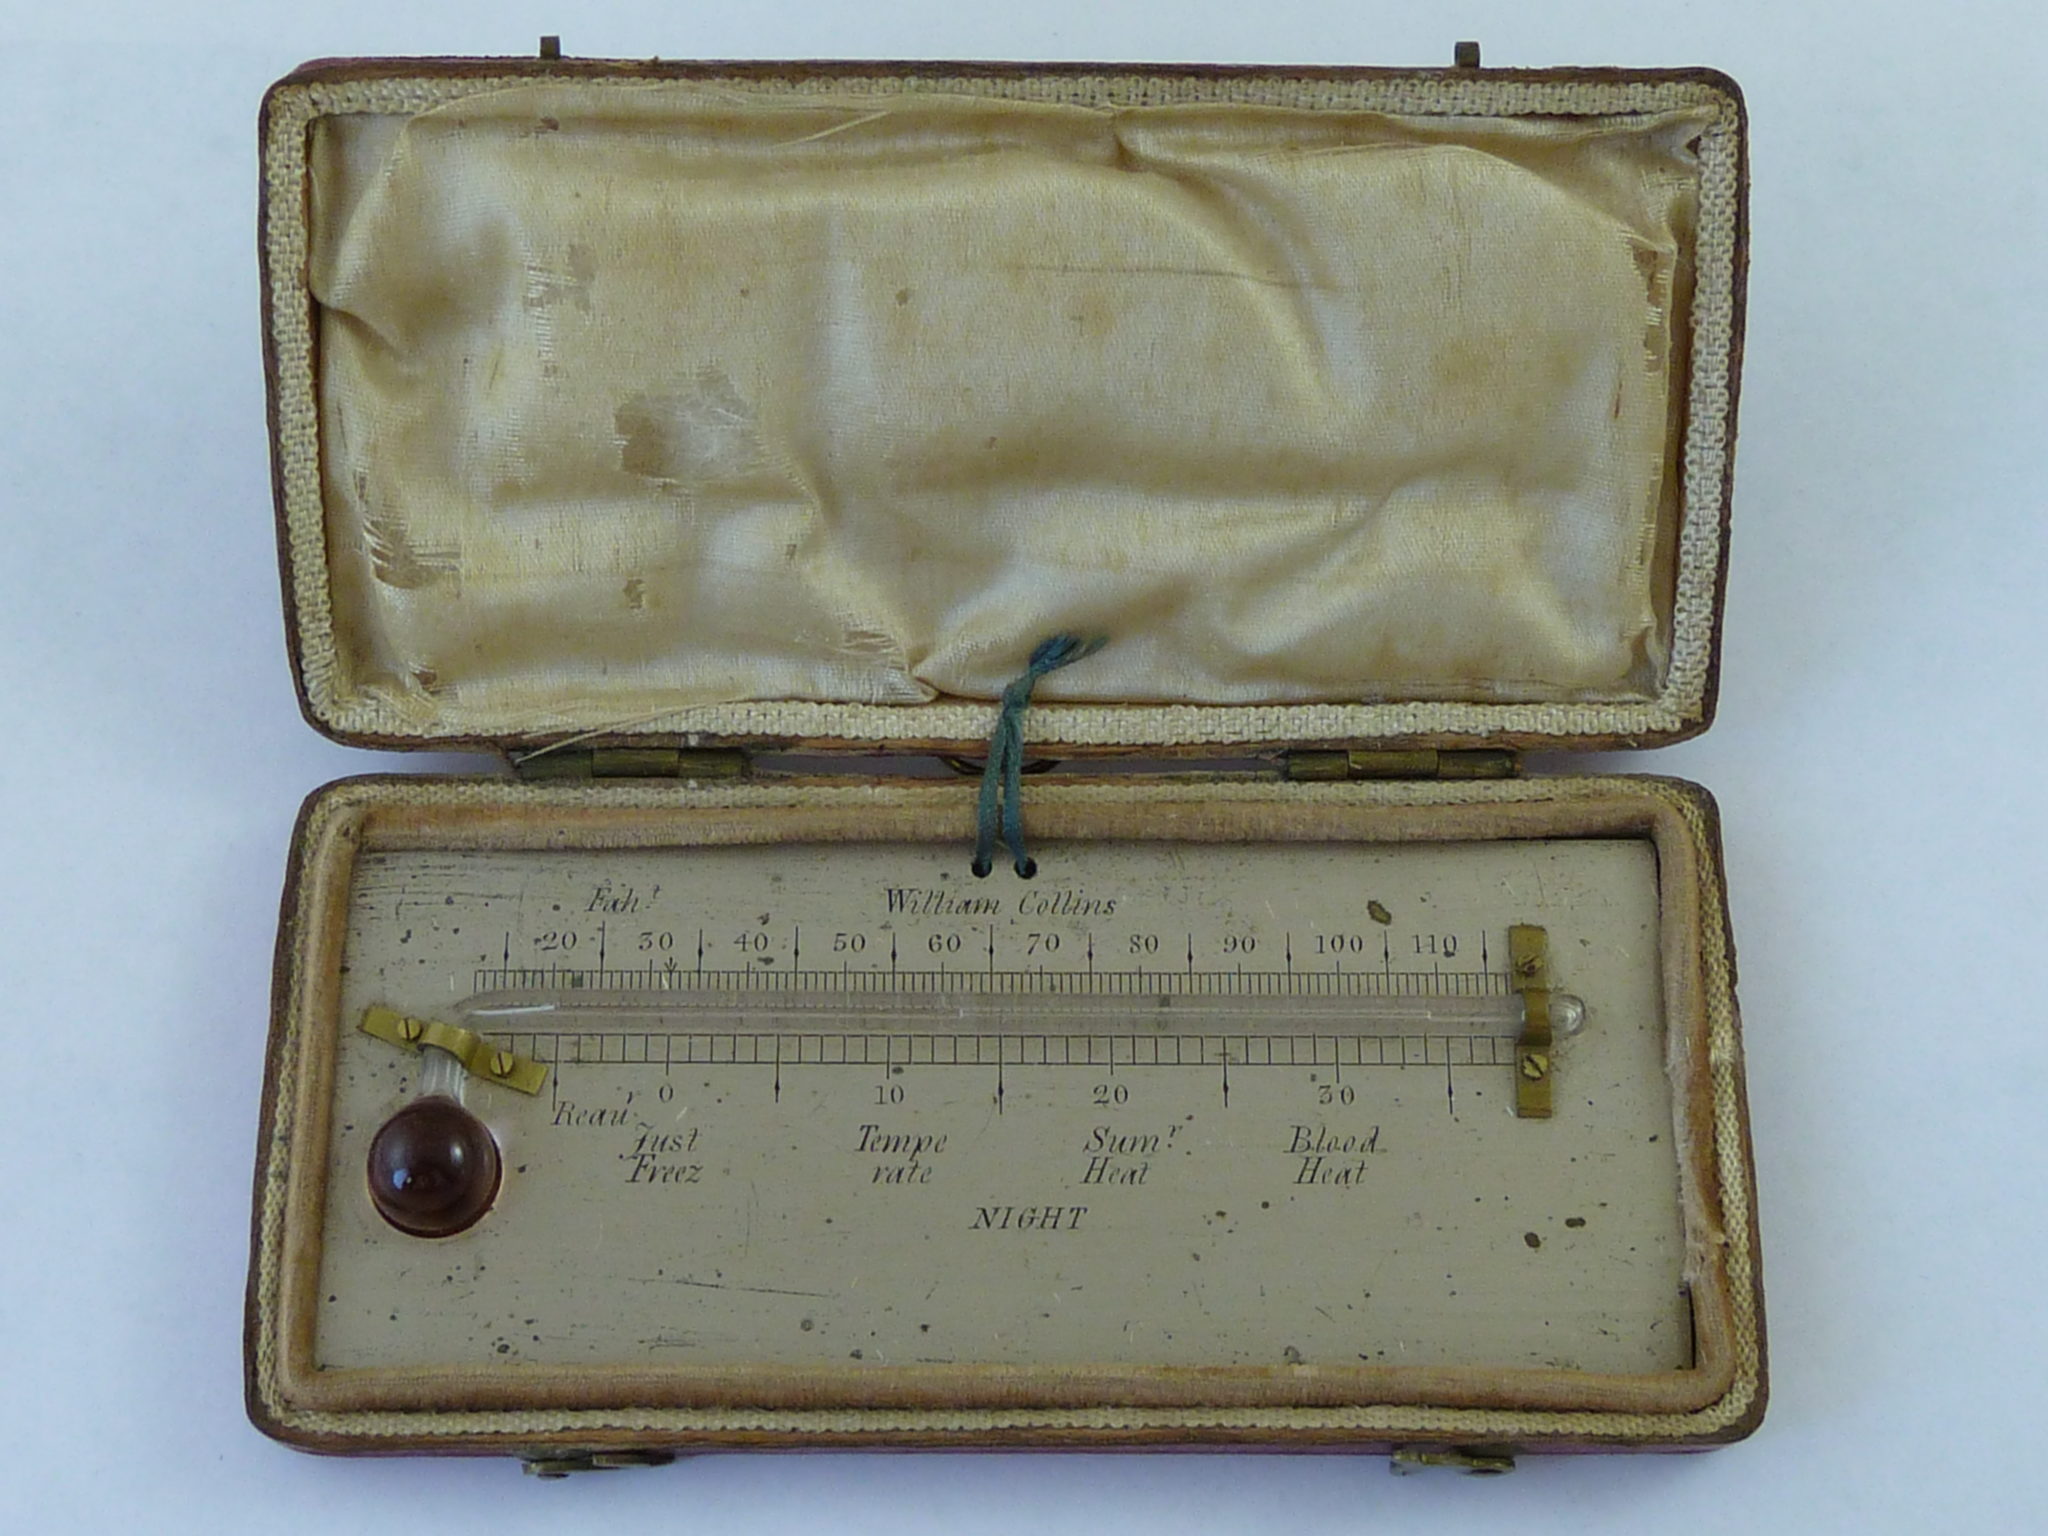 William Collins Minimum Night Alcohol Thermometer Leather Cased Antique